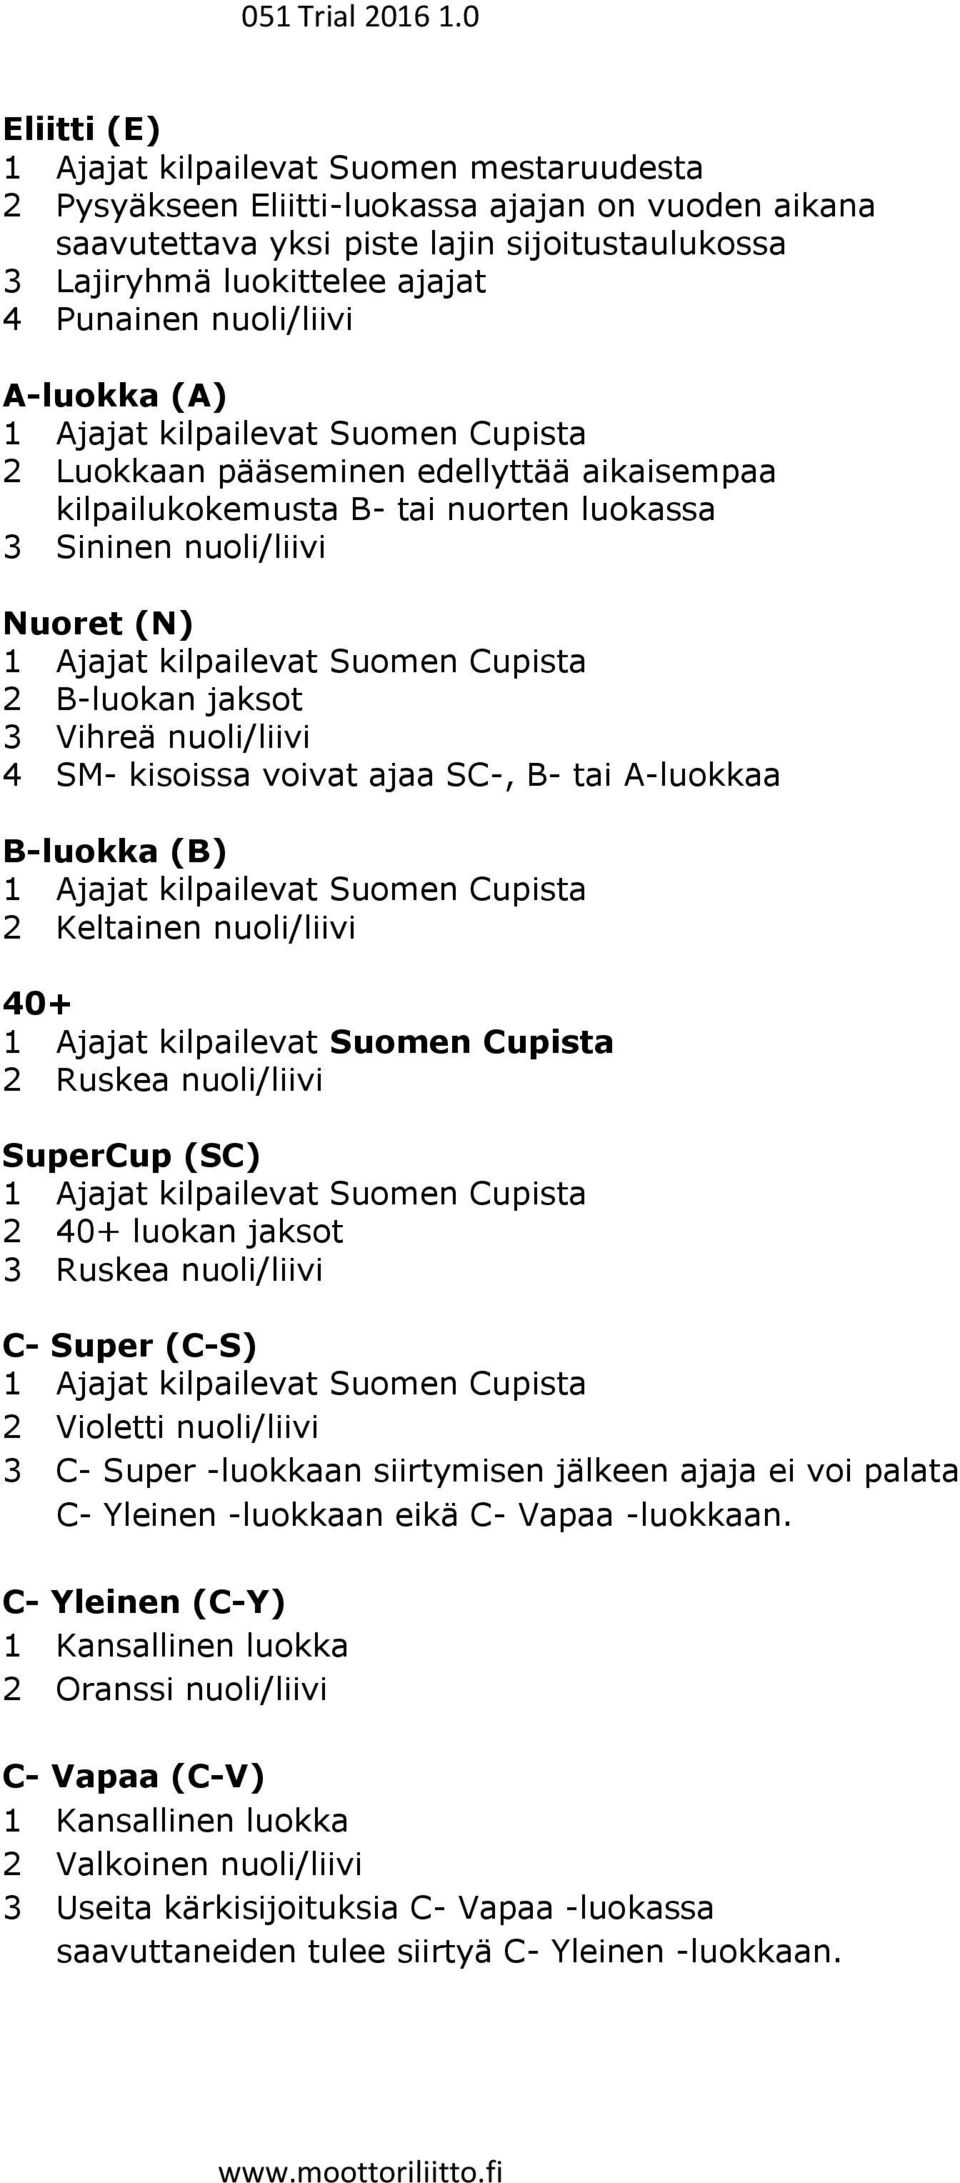 kilpailevat Suomen Cupista 2 B-luokan jaksot 3 Vihreä nuoli/liivi 4 SM- kisoissa voivat ajaa SC-, B- tai A-luokkaa B-luokka (B) 1 Ajajat kilpailevat Suomen Cupista 2 Keltainen nuoli/liivi 40+ 1